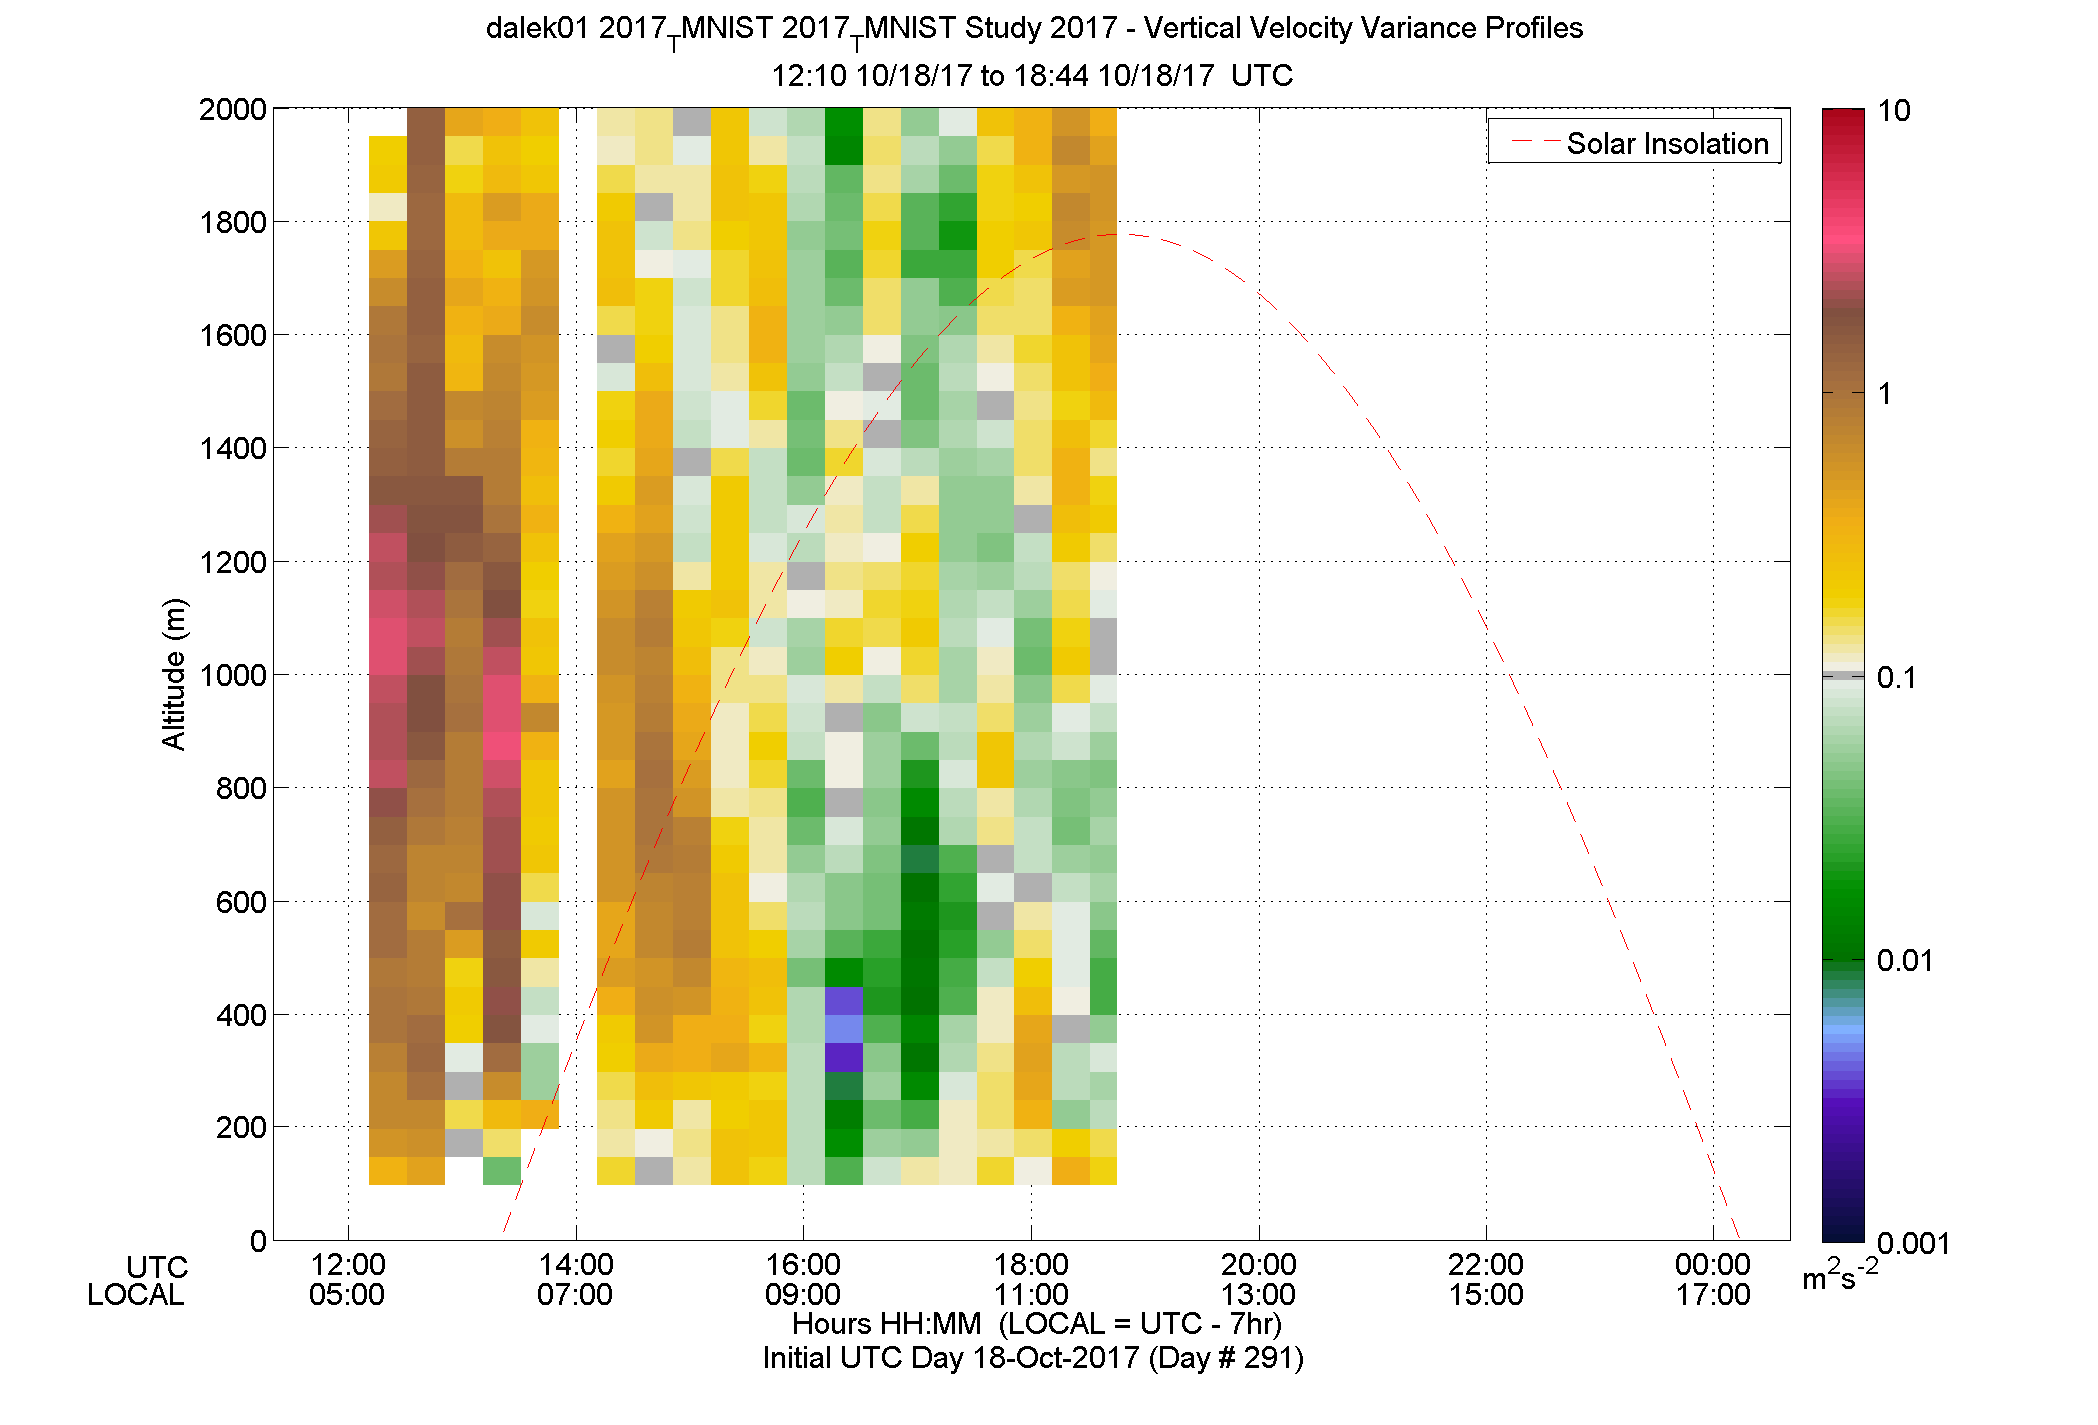 DALEK vertical variance profile - October 18 pm